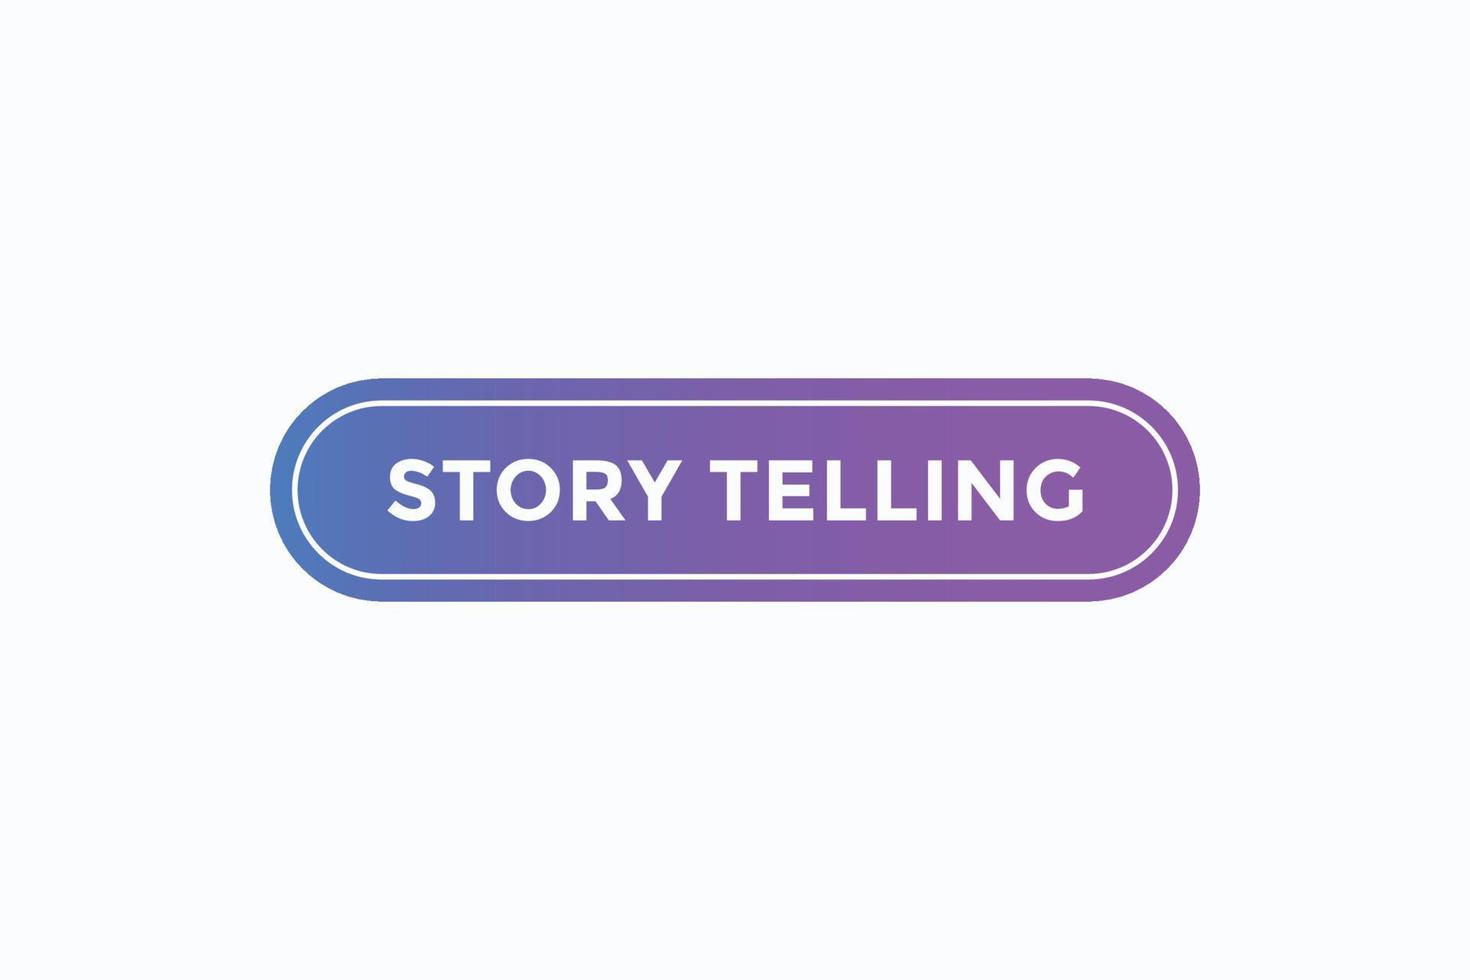 vetores de botão de contar histórias. rótulo de sinal balão de fala contando histórias